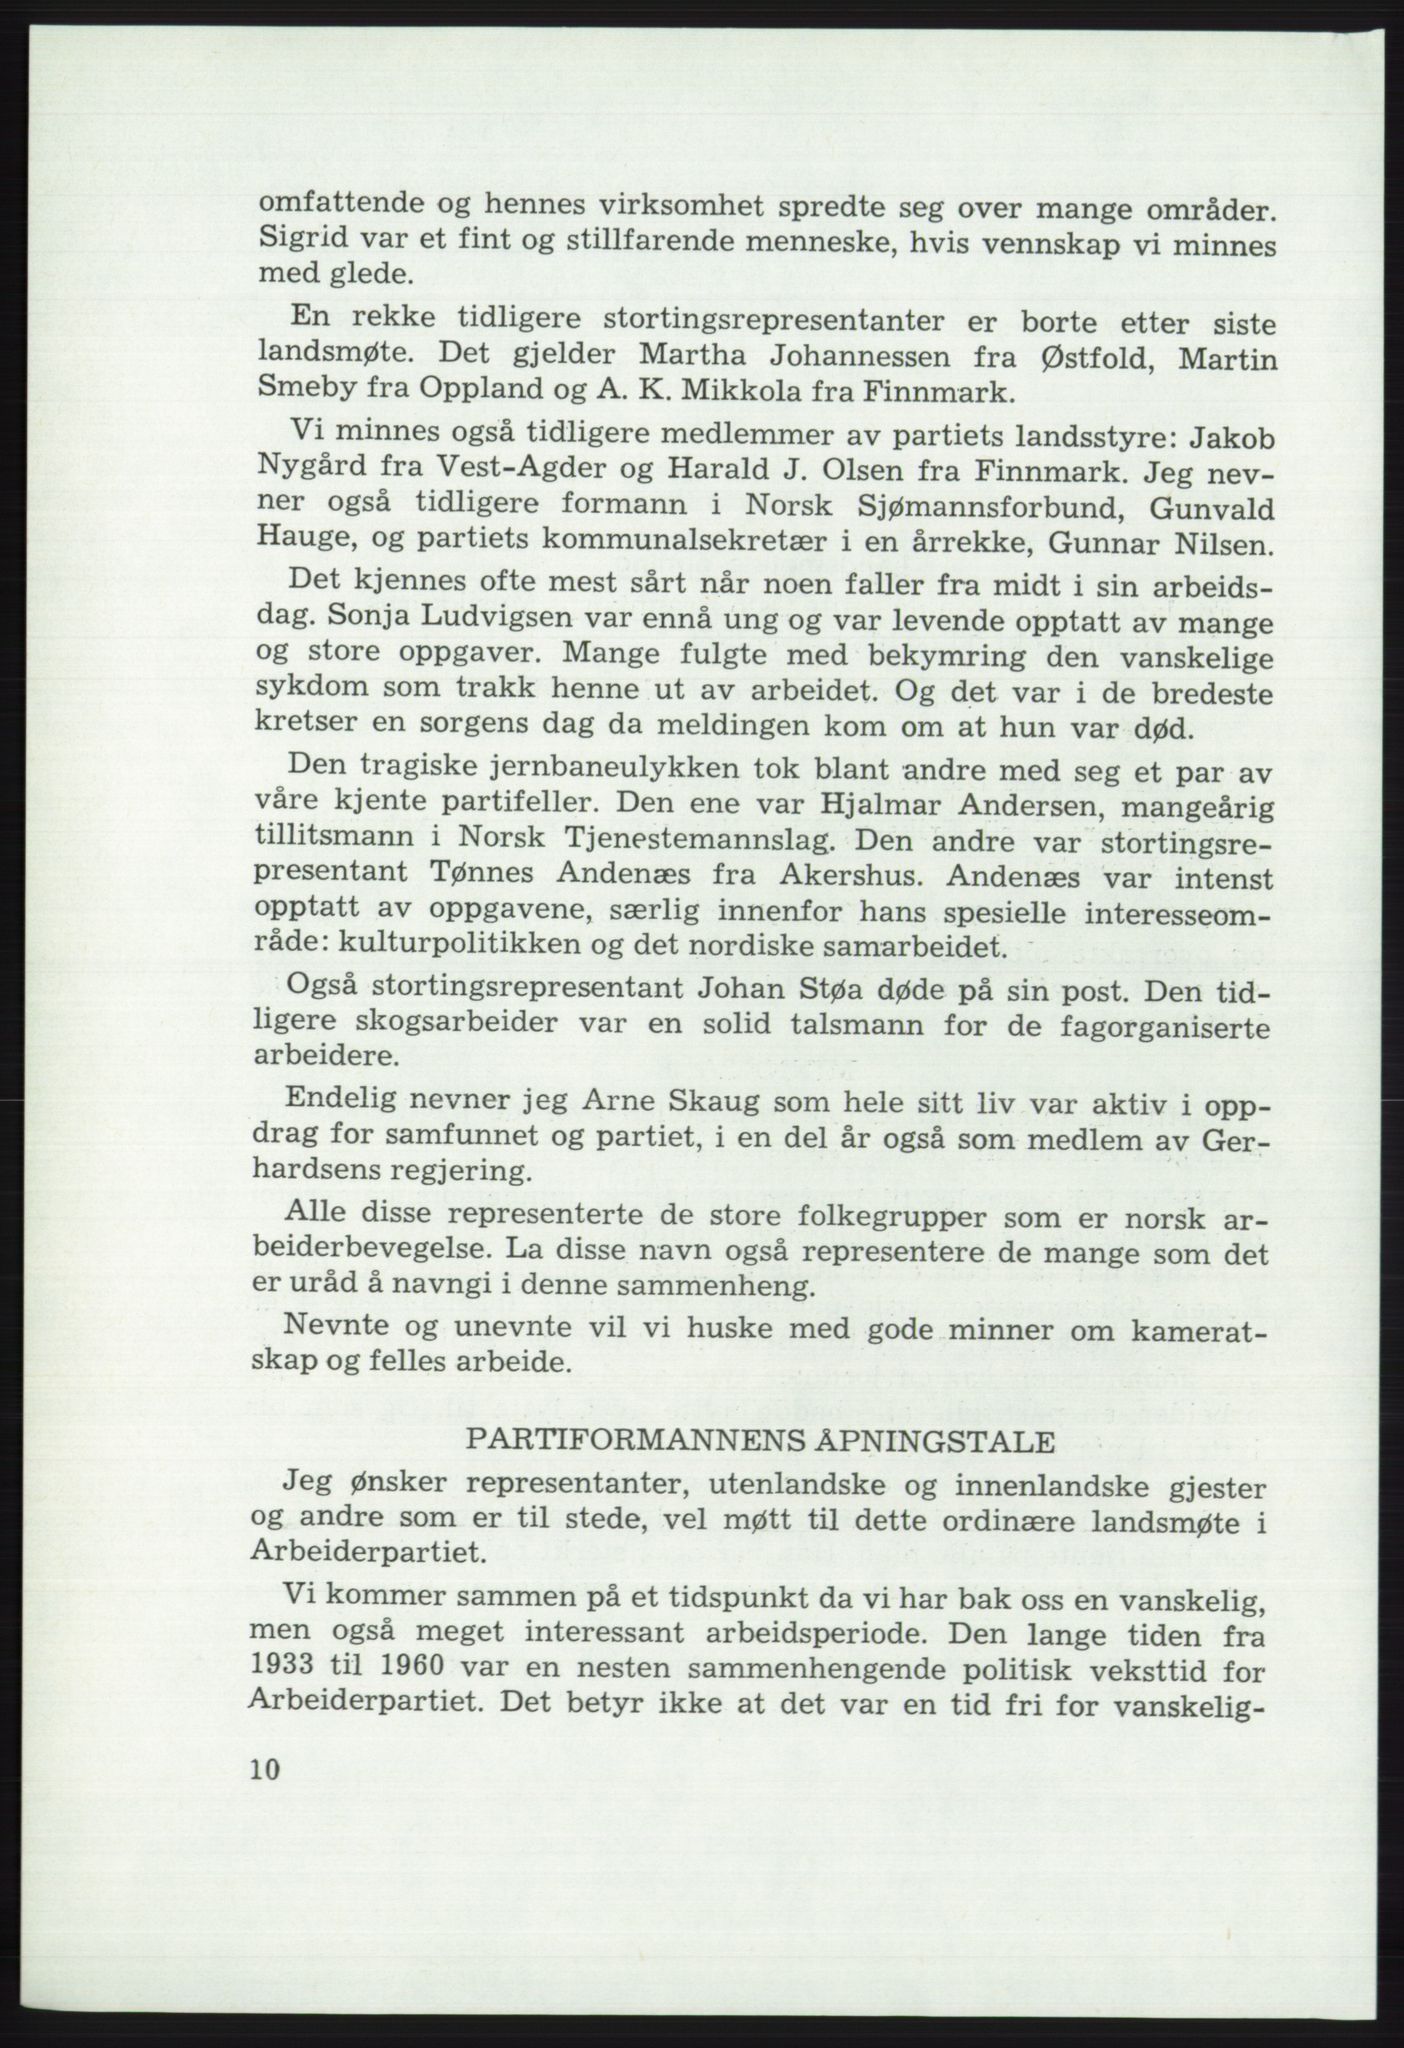 Det norske Arbeiderparti - publikasjoner, AAB/-/-/-: Protokoll over forhandlingene på det 46. ordinære landsmøte 20.-23. april 1975, 1975, s. 10